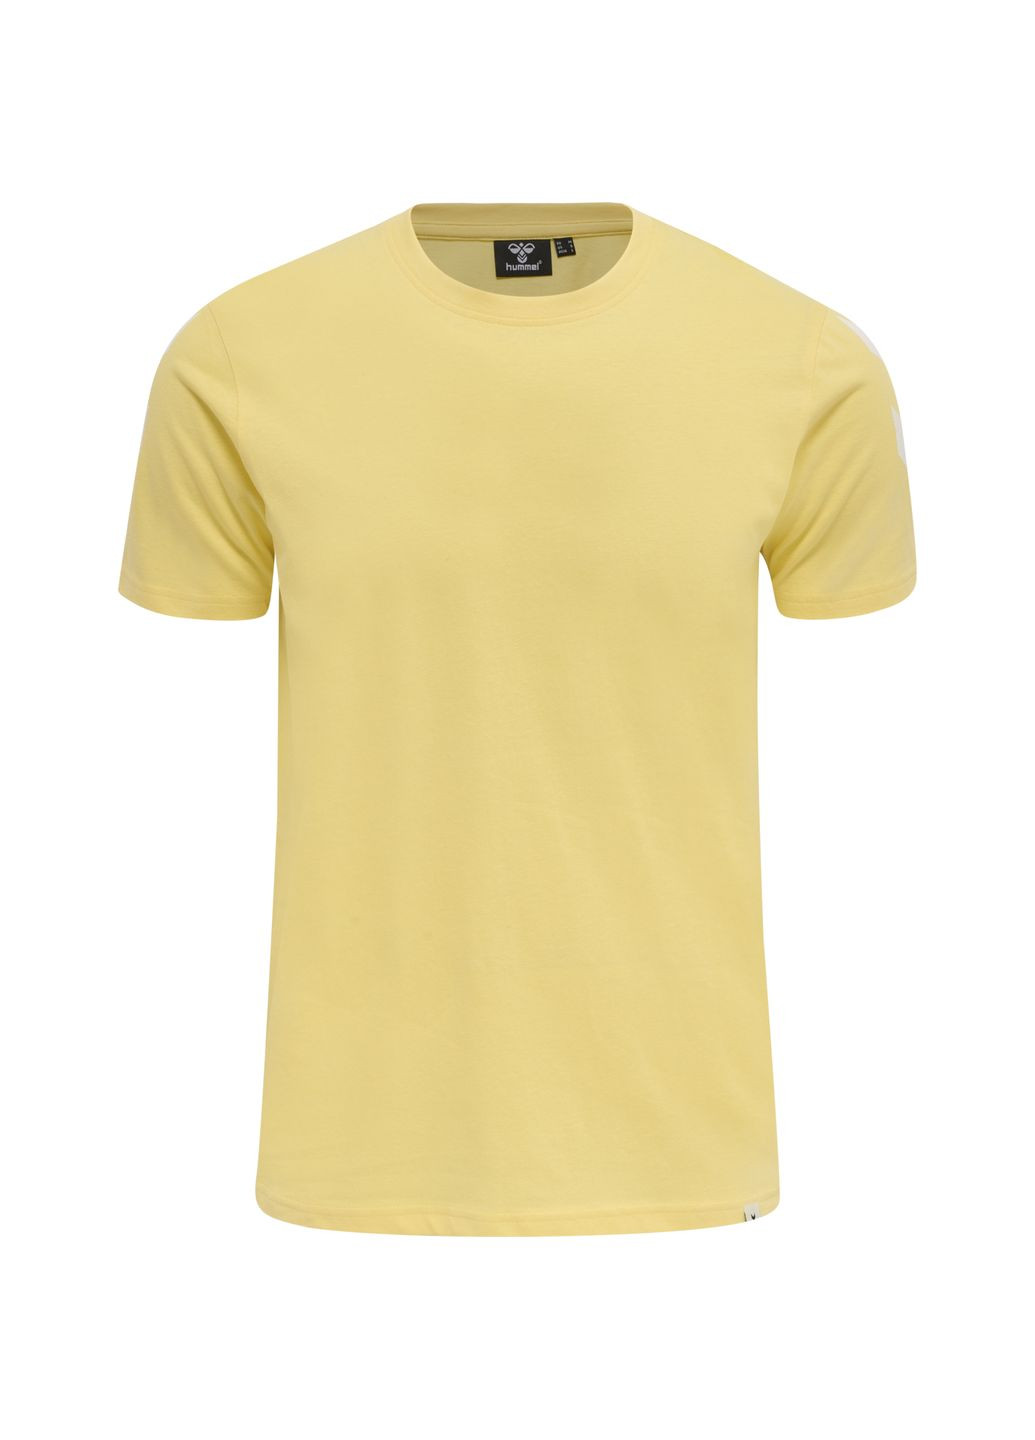 Жовта футболка з логотипом для чоловіка 212570 жовтий Hummel